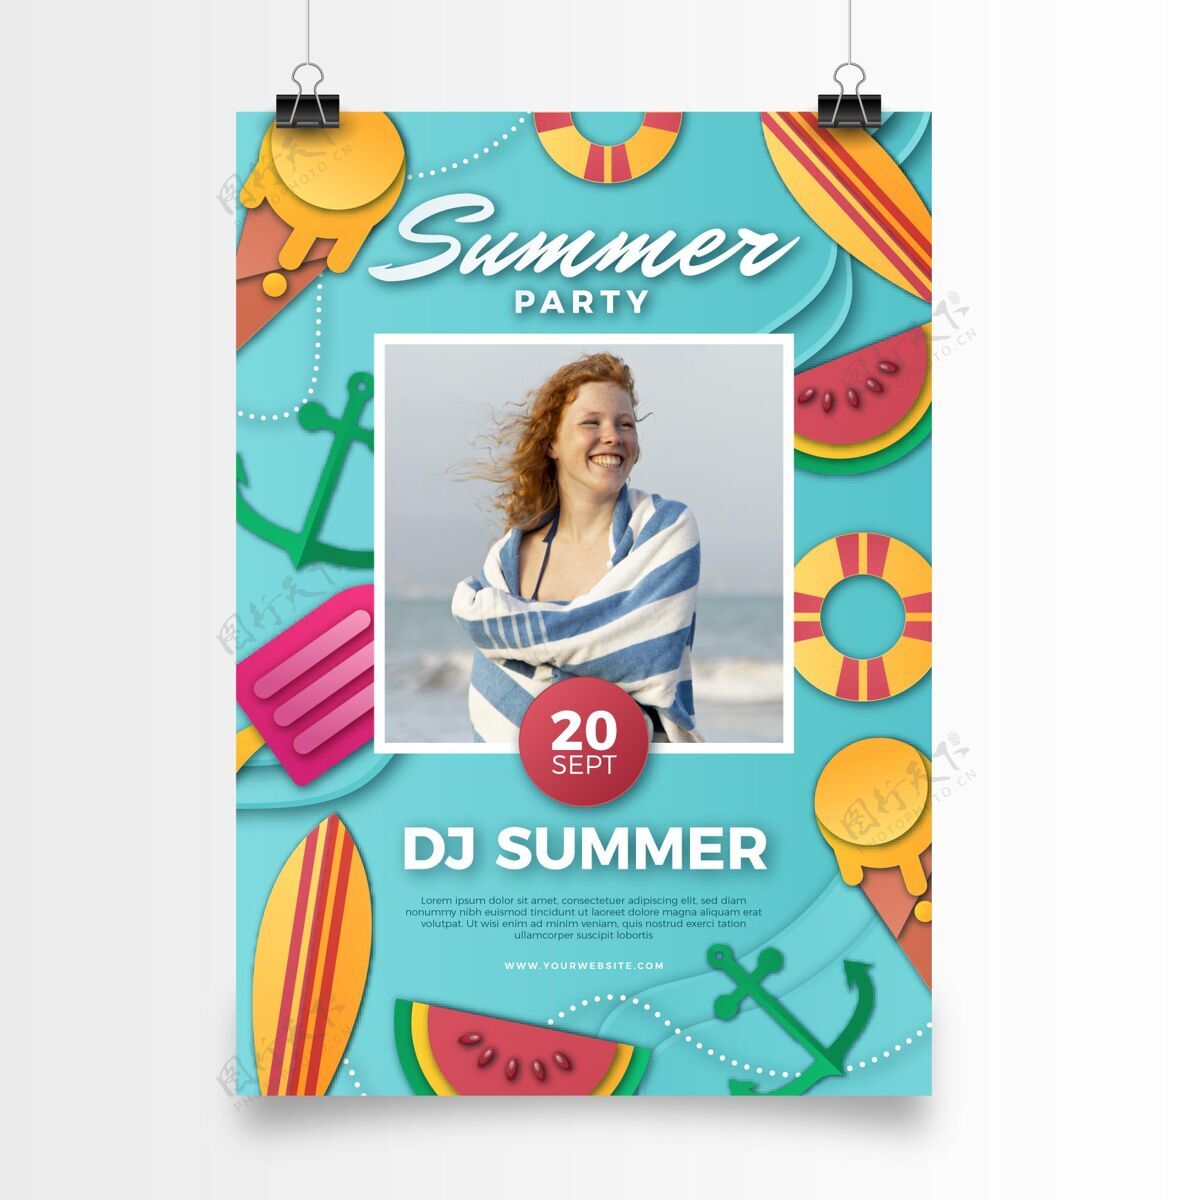 聚会夏季聚会垂直海报模板在纸与照片风格纸张样式夏天夏天聚会传单